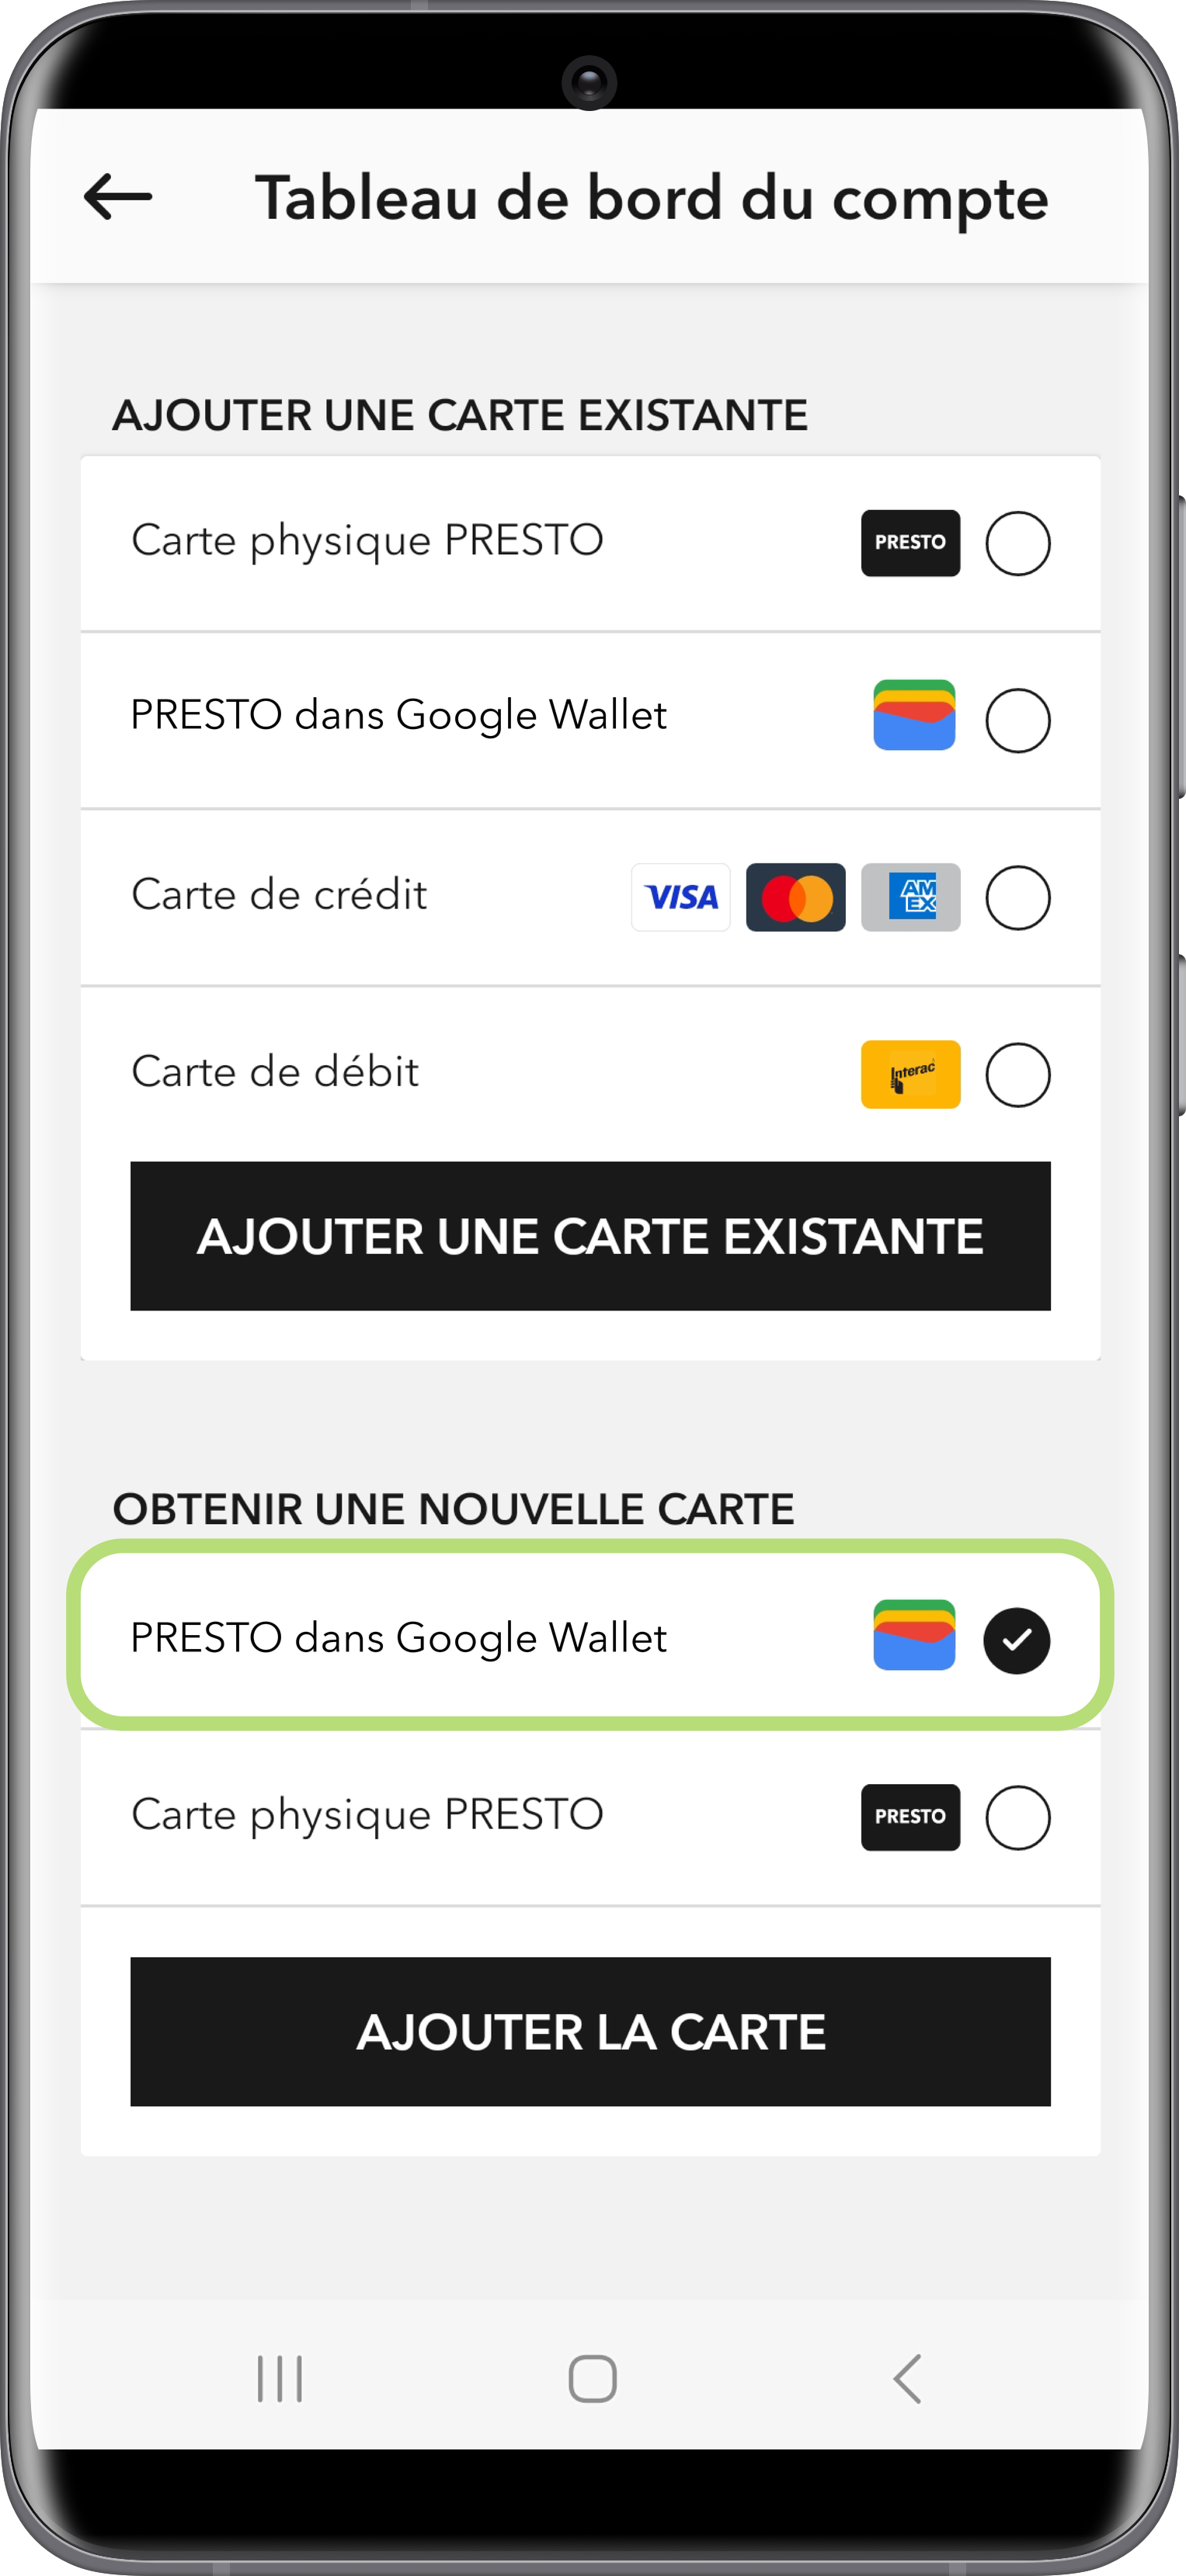 Obtenir une nouvelle carte PRESTO dans Google Wallet à l'aide de l'application PRESTO 2 étape capture d'écran